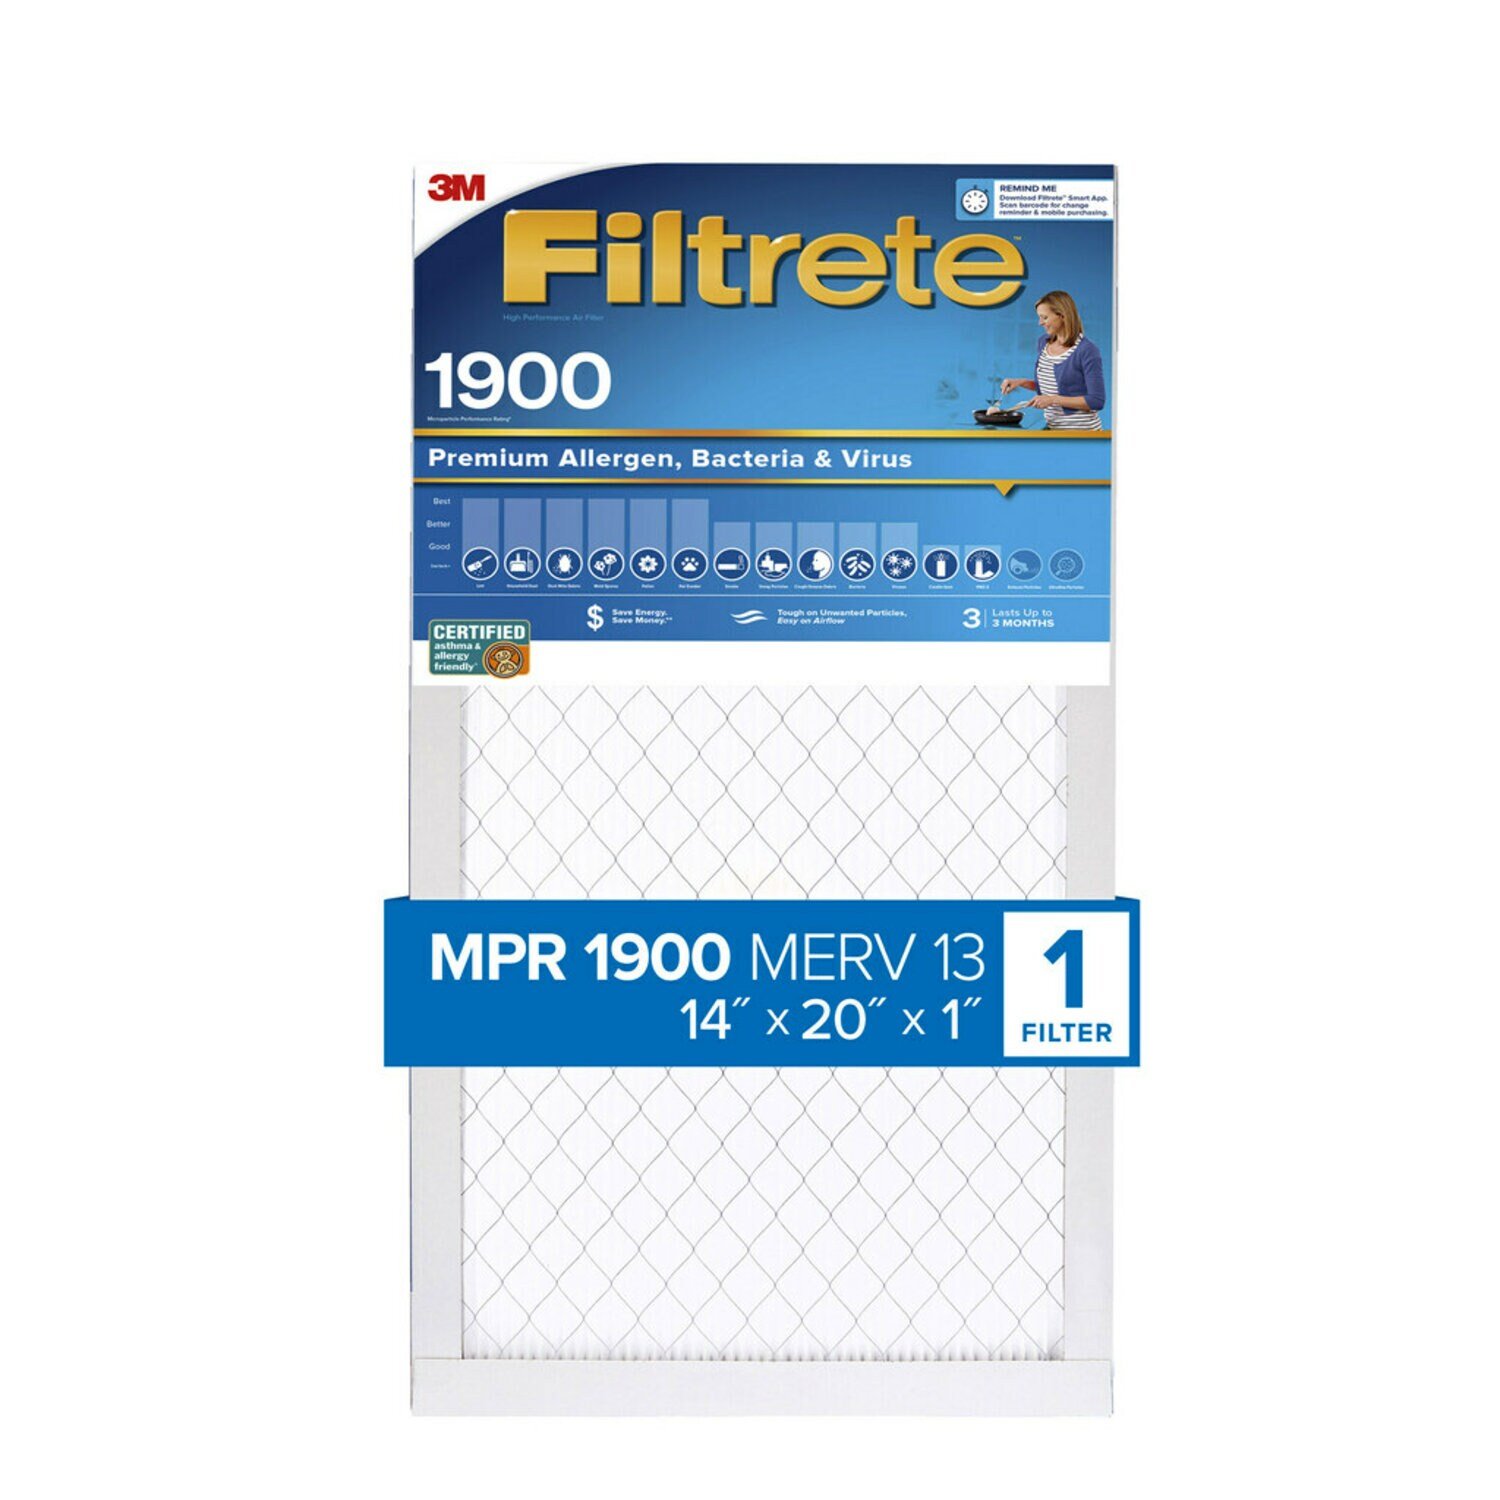 7100268934 - Filtrete High Performance Air Filter 1900 MPR UA05-4, 14 in x 20 in x 1 in (35.5 cm x 50.8 cm x 2.5 cm)